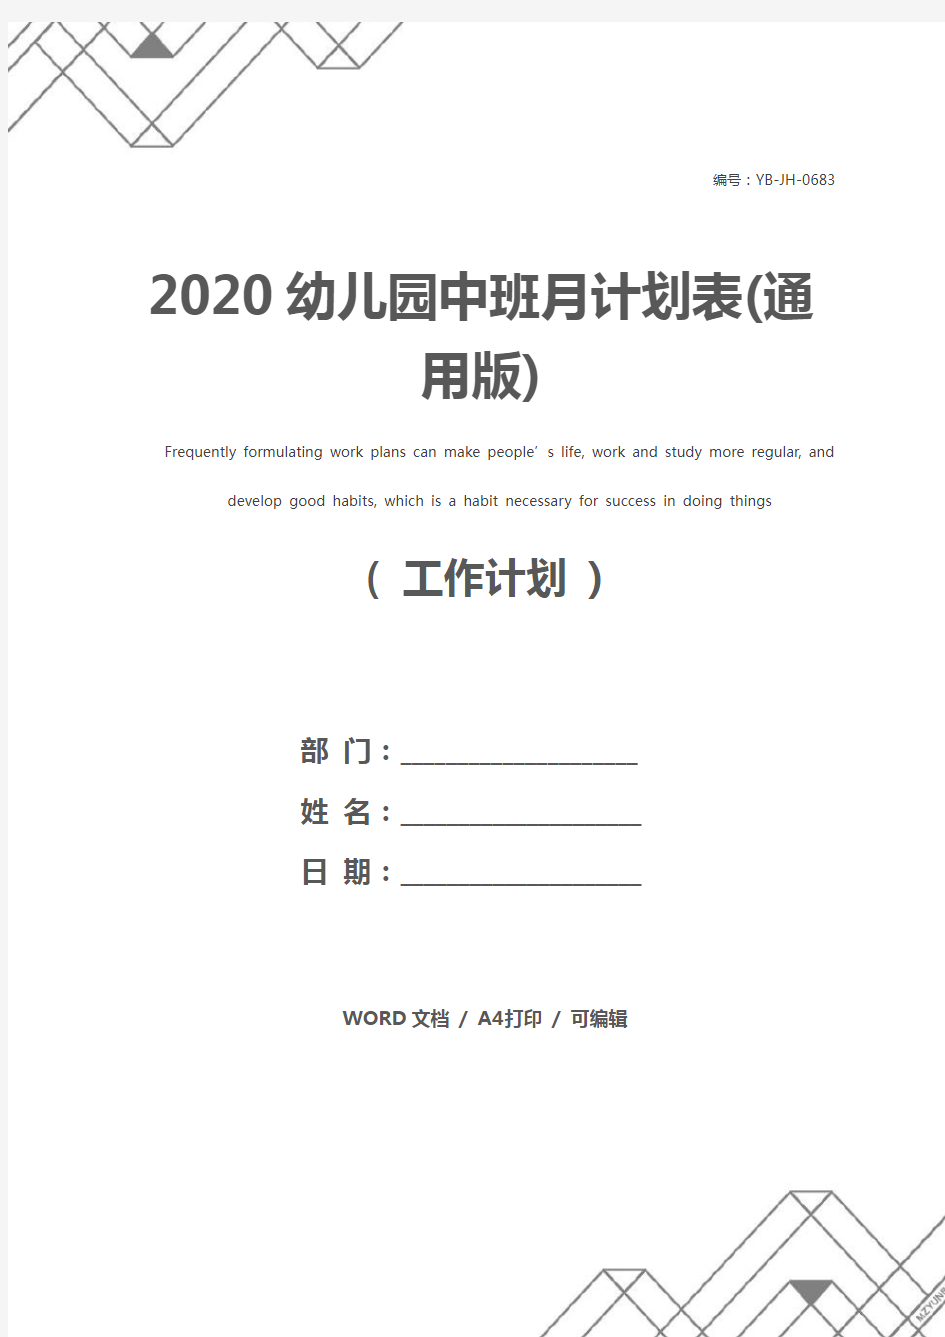 2020幼儿园中班月计划表(通用版)